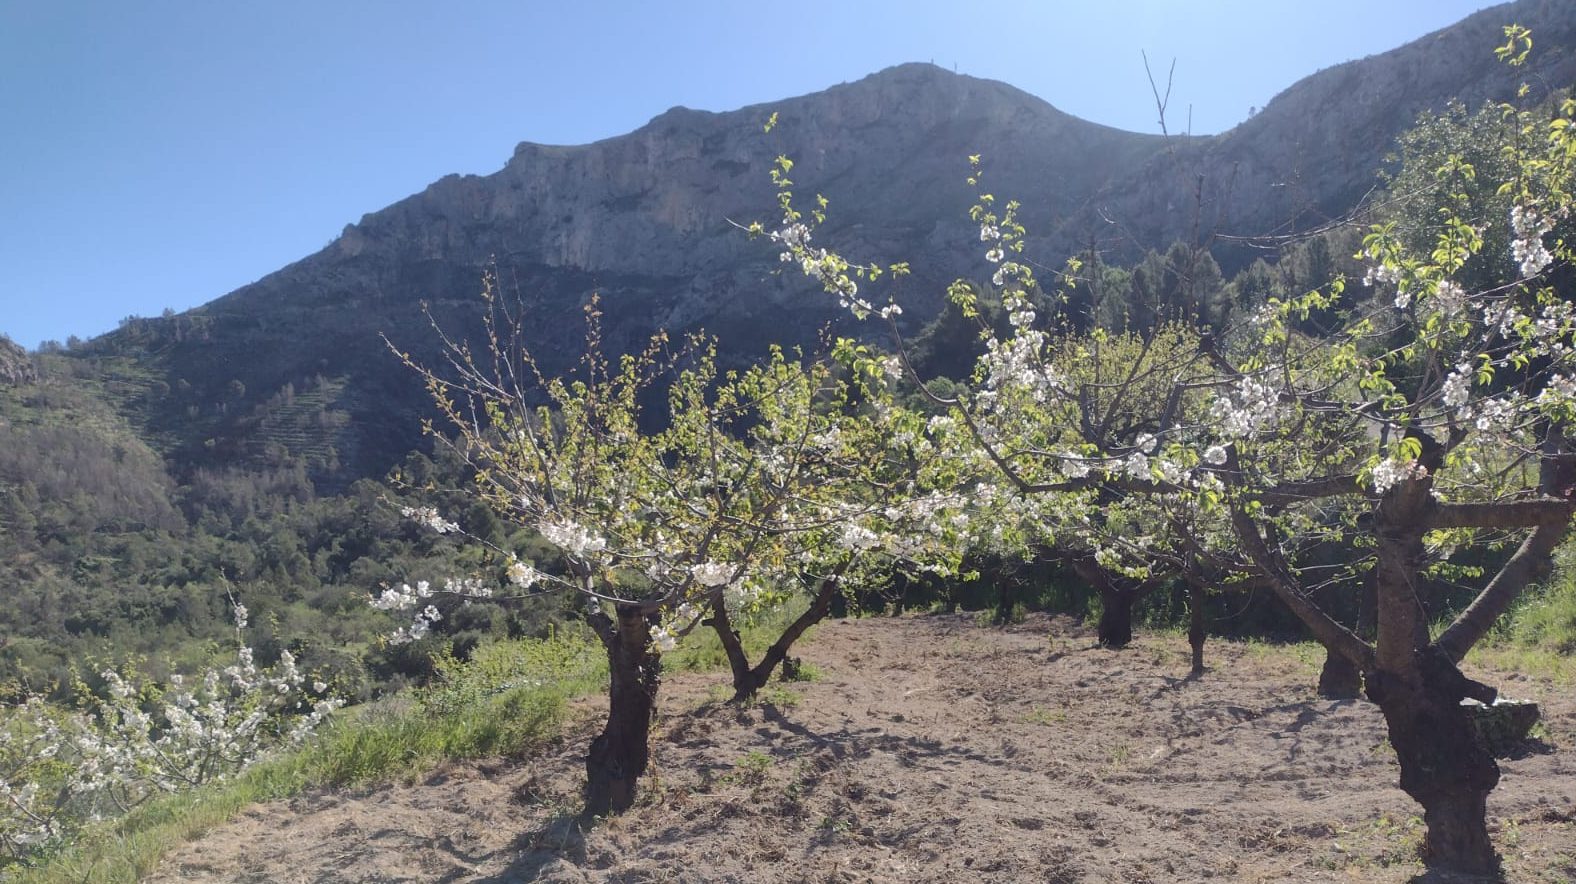 Rutas para disfrutar de los Cerezos en Flor en Alicante - LinkAlicante